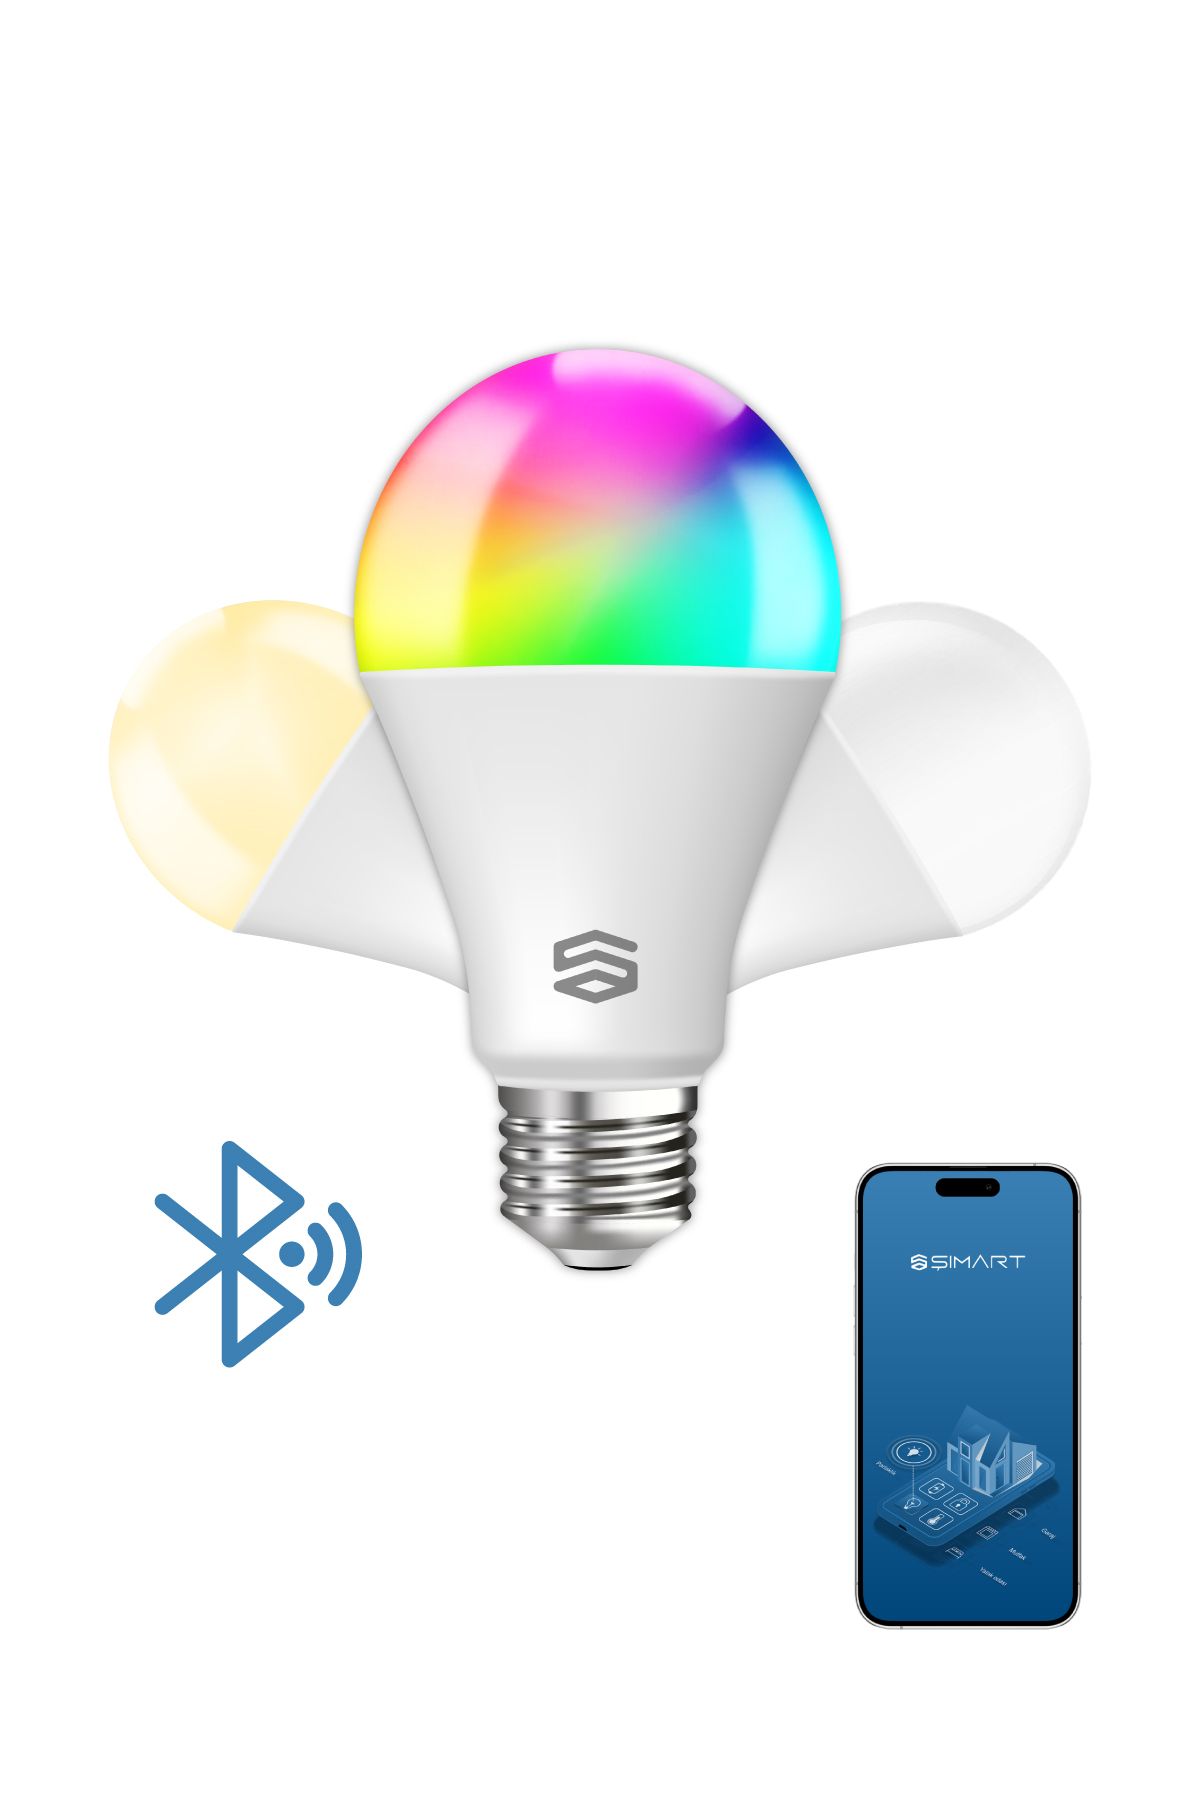 Şımart Teknoloji Şımart Akıllı Bluetooth Led Ampul